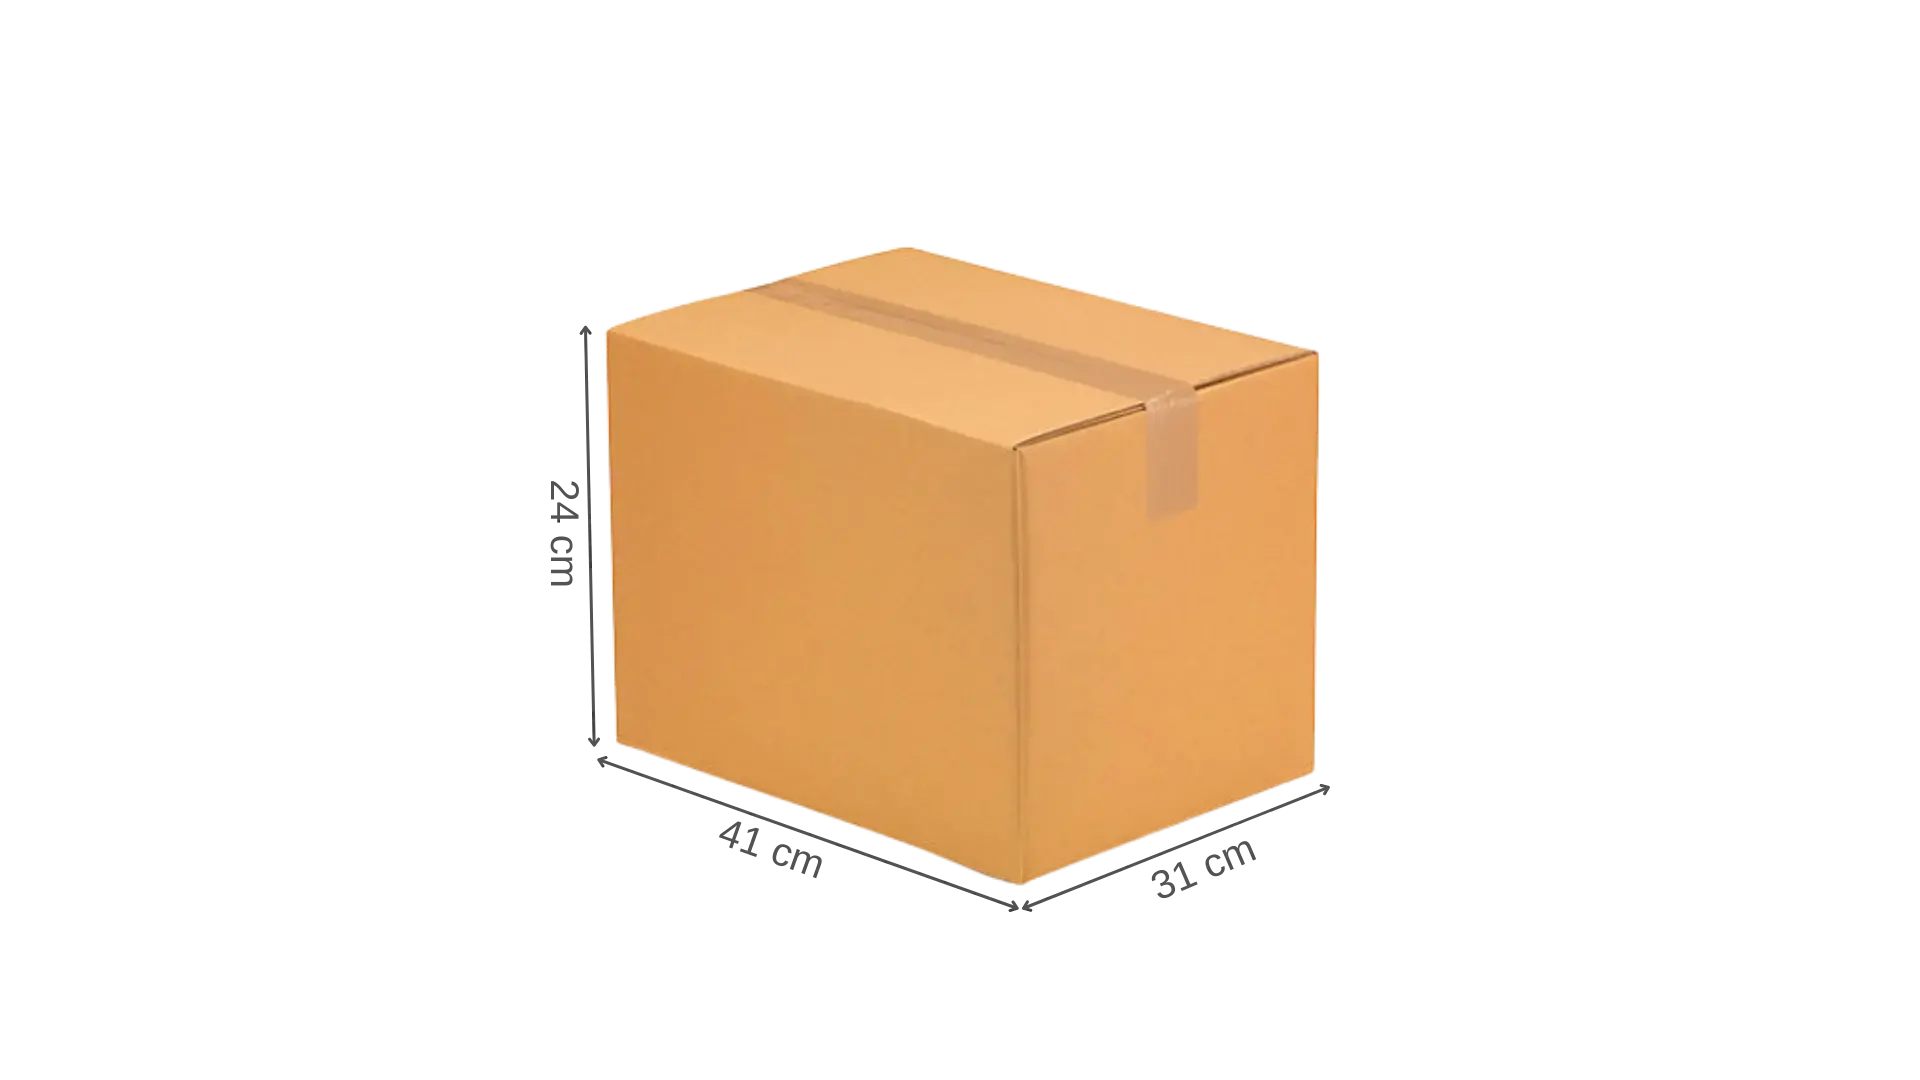 Carton déménagement - 60 cm x 40 cm x 40 cm - simple cannelure - Antalis